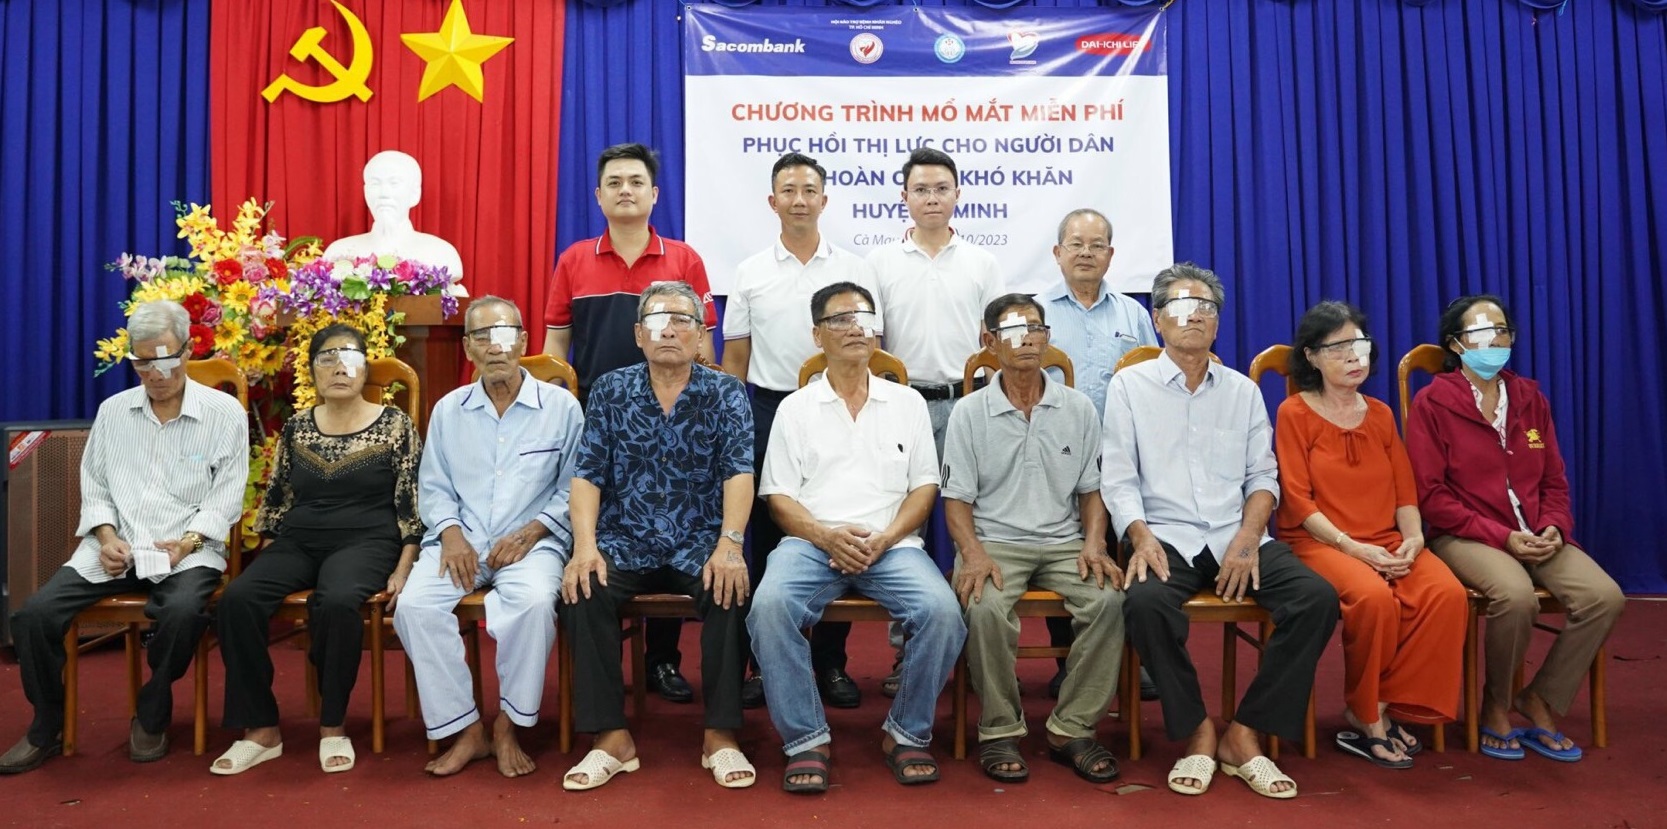 SACOMBANK và DAI-ICHI LIFE Việt Nam tiếp tục đồng hành với bệnh nhân nghèo - Ảnh 2.